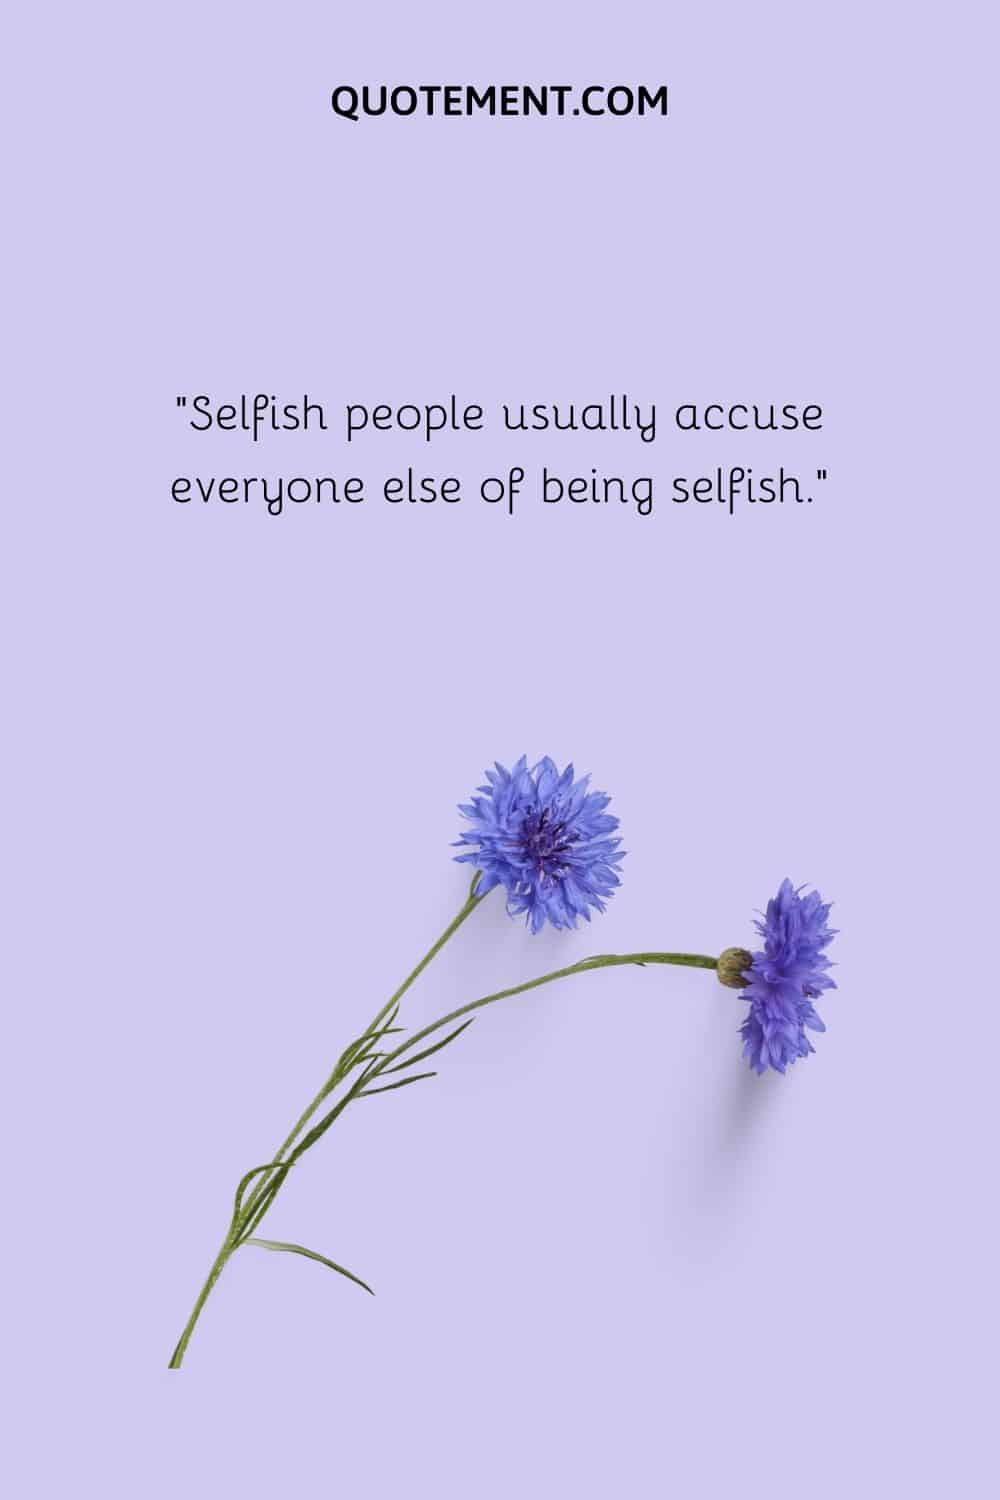 Selfish people usually accuse everyone else of being selfish